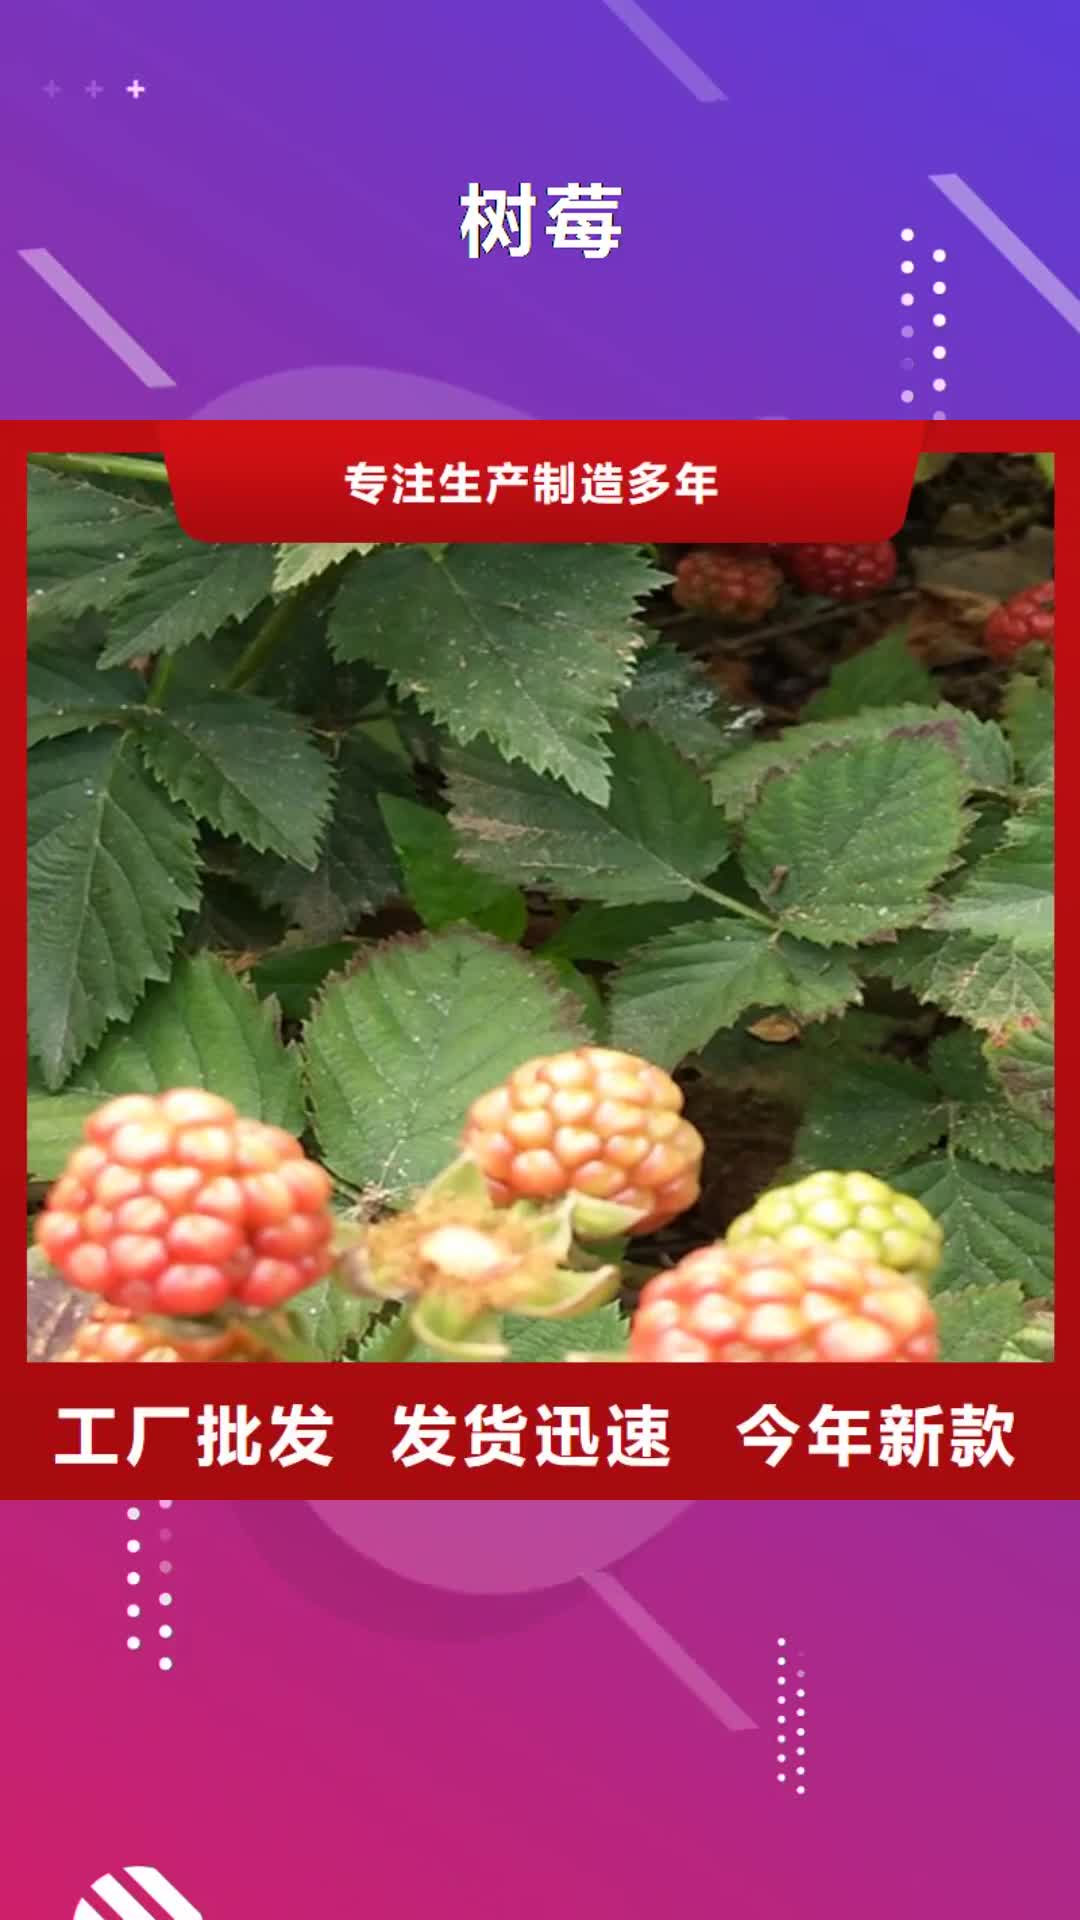 【常州 树莓-樱桃苗厂家直营】